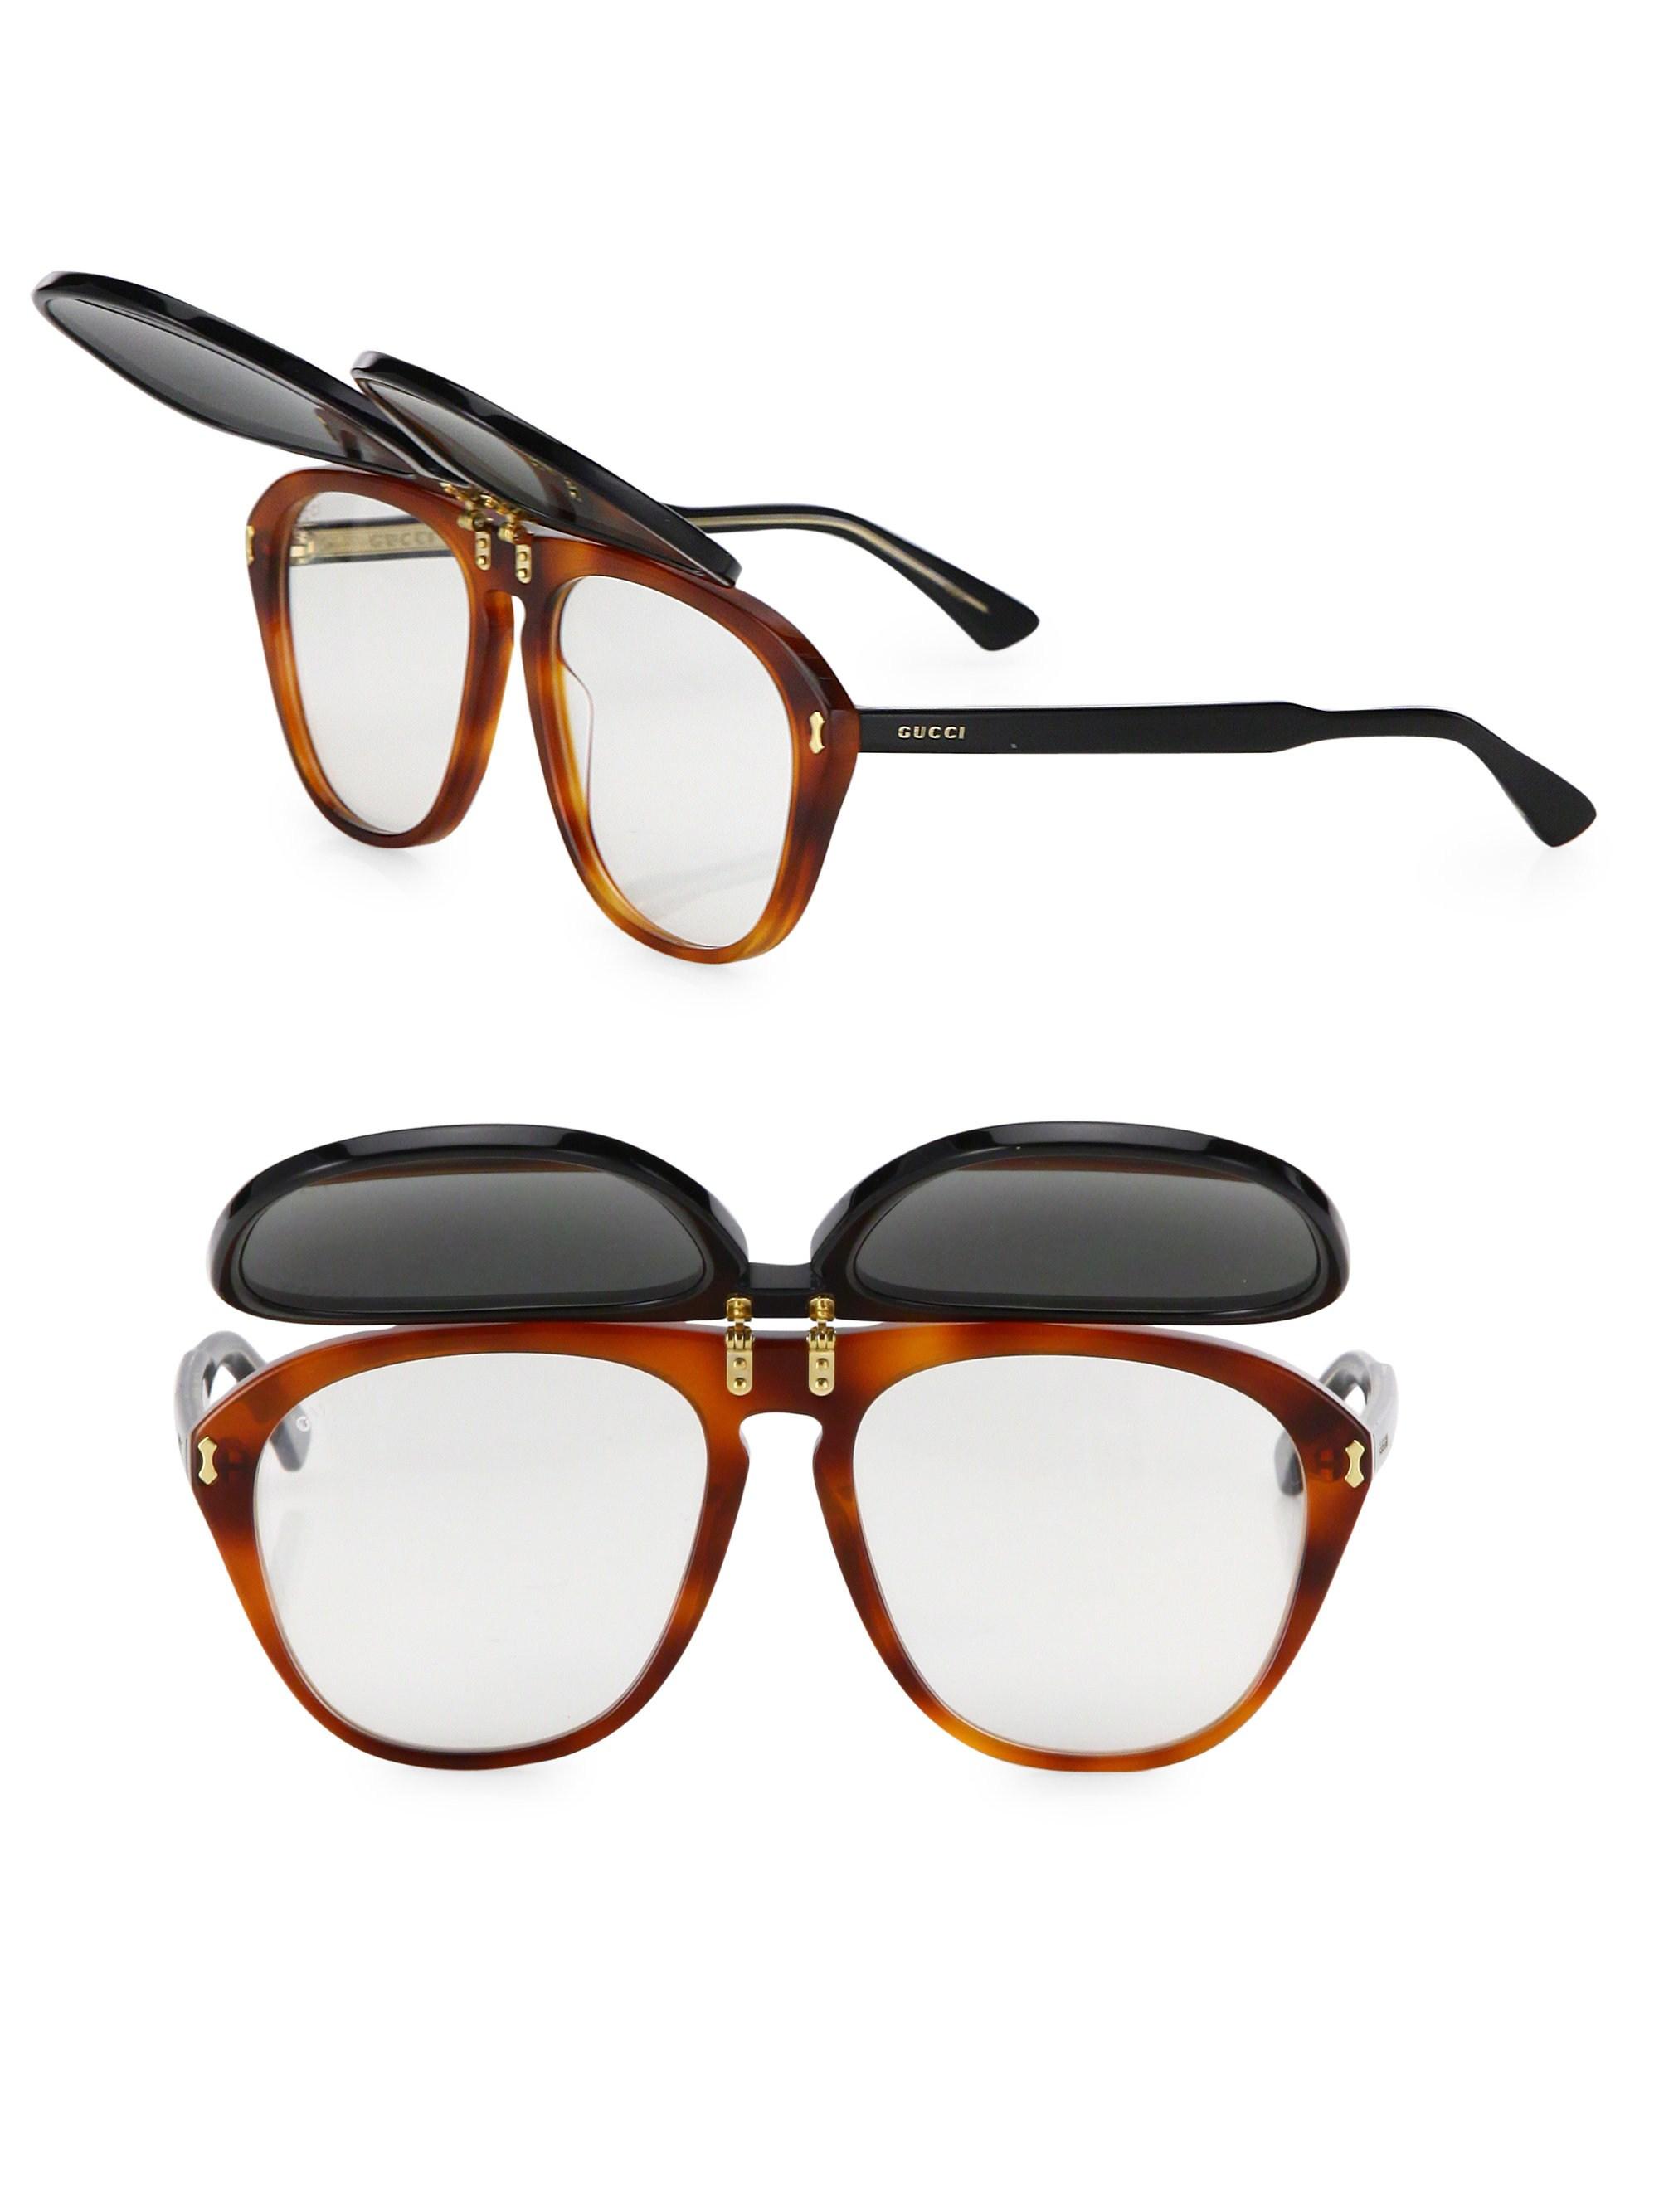 Gucci Glasses Flip Up Online, 51% OFF | centro-innato.com